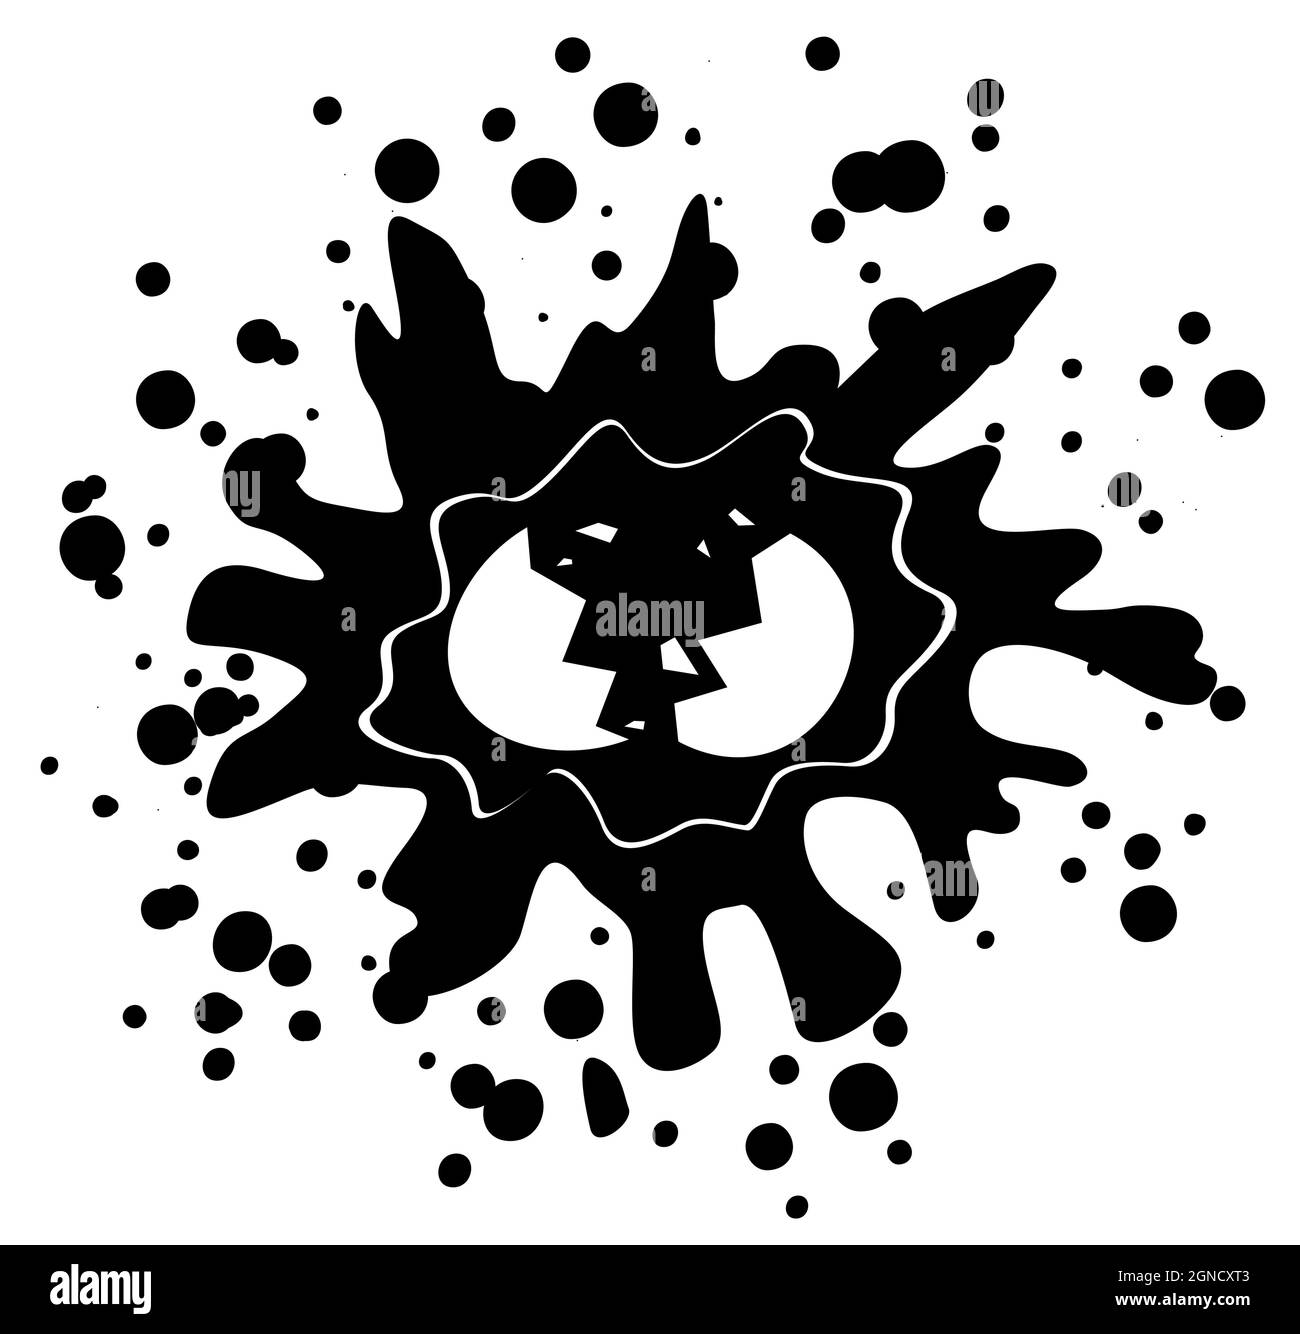 Éclaboussures de craquelures d'œufs grunge noir, illustration vectorielle, horizontale, isolée Illustration de Vecteur